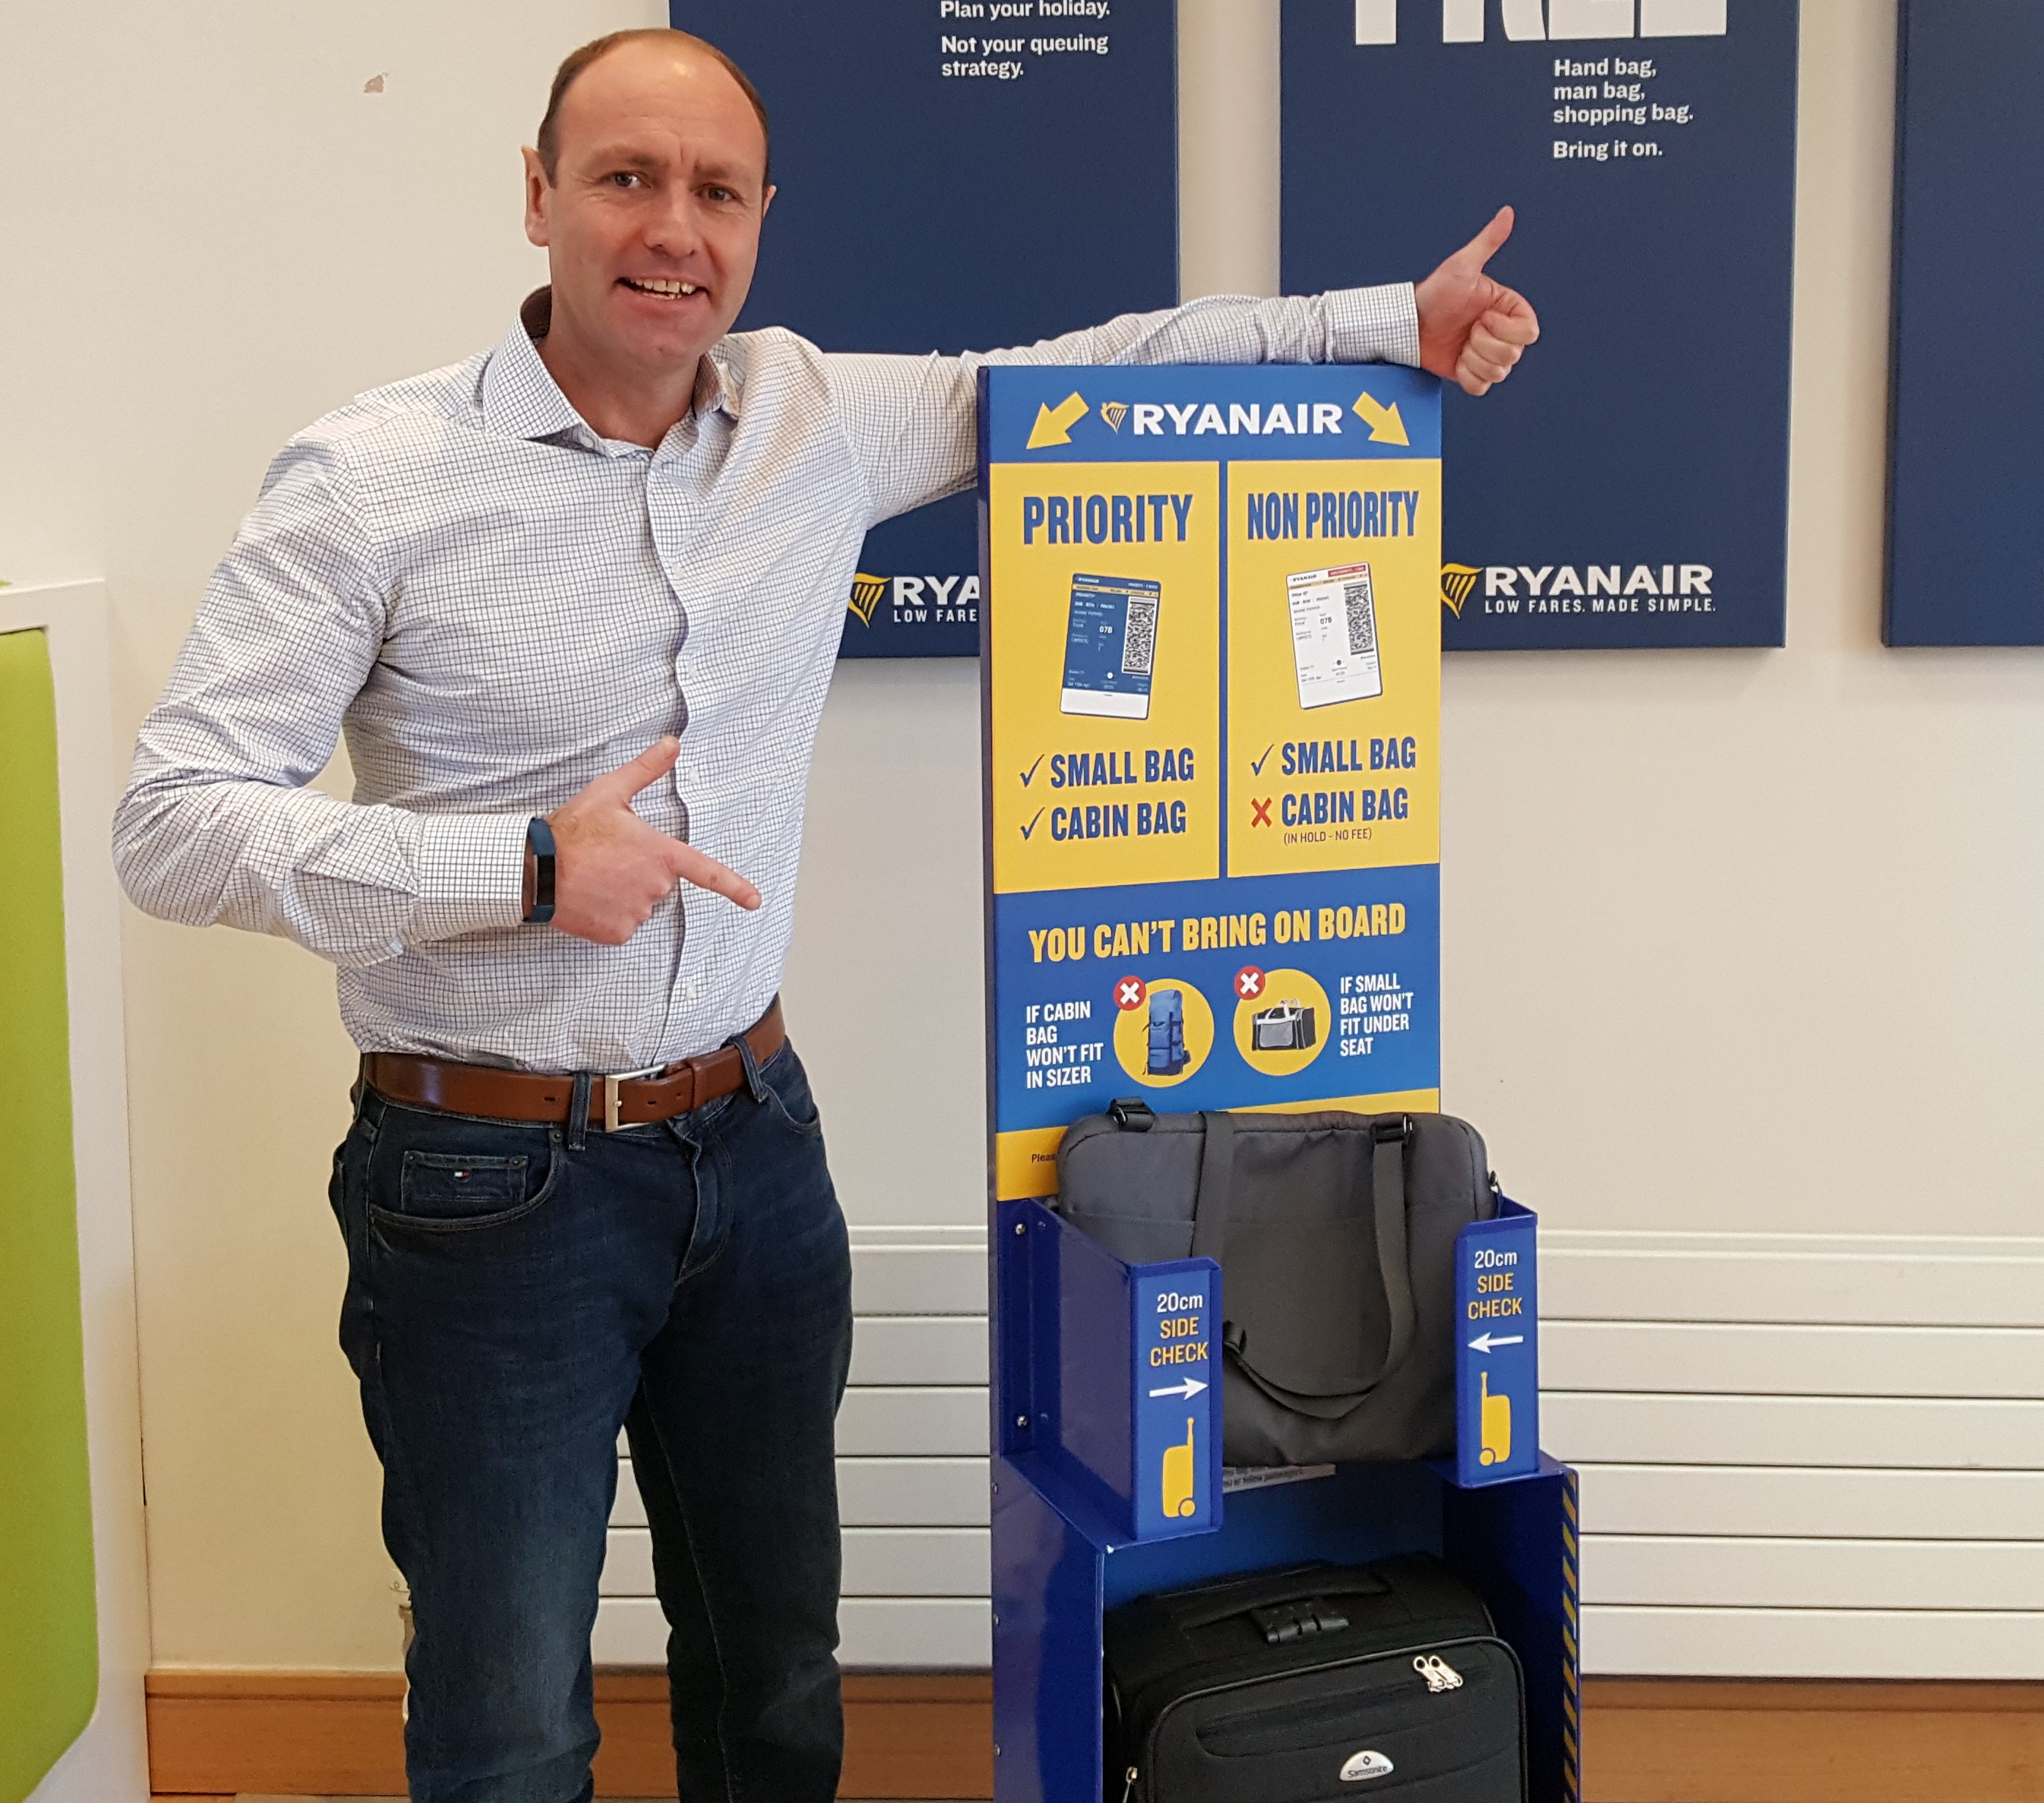 Les clients Ryanair non-prioritaires doivent mettre leur 2ème bagage à main (le plus grand) en soute (gratuitement) dès le 15 janvier